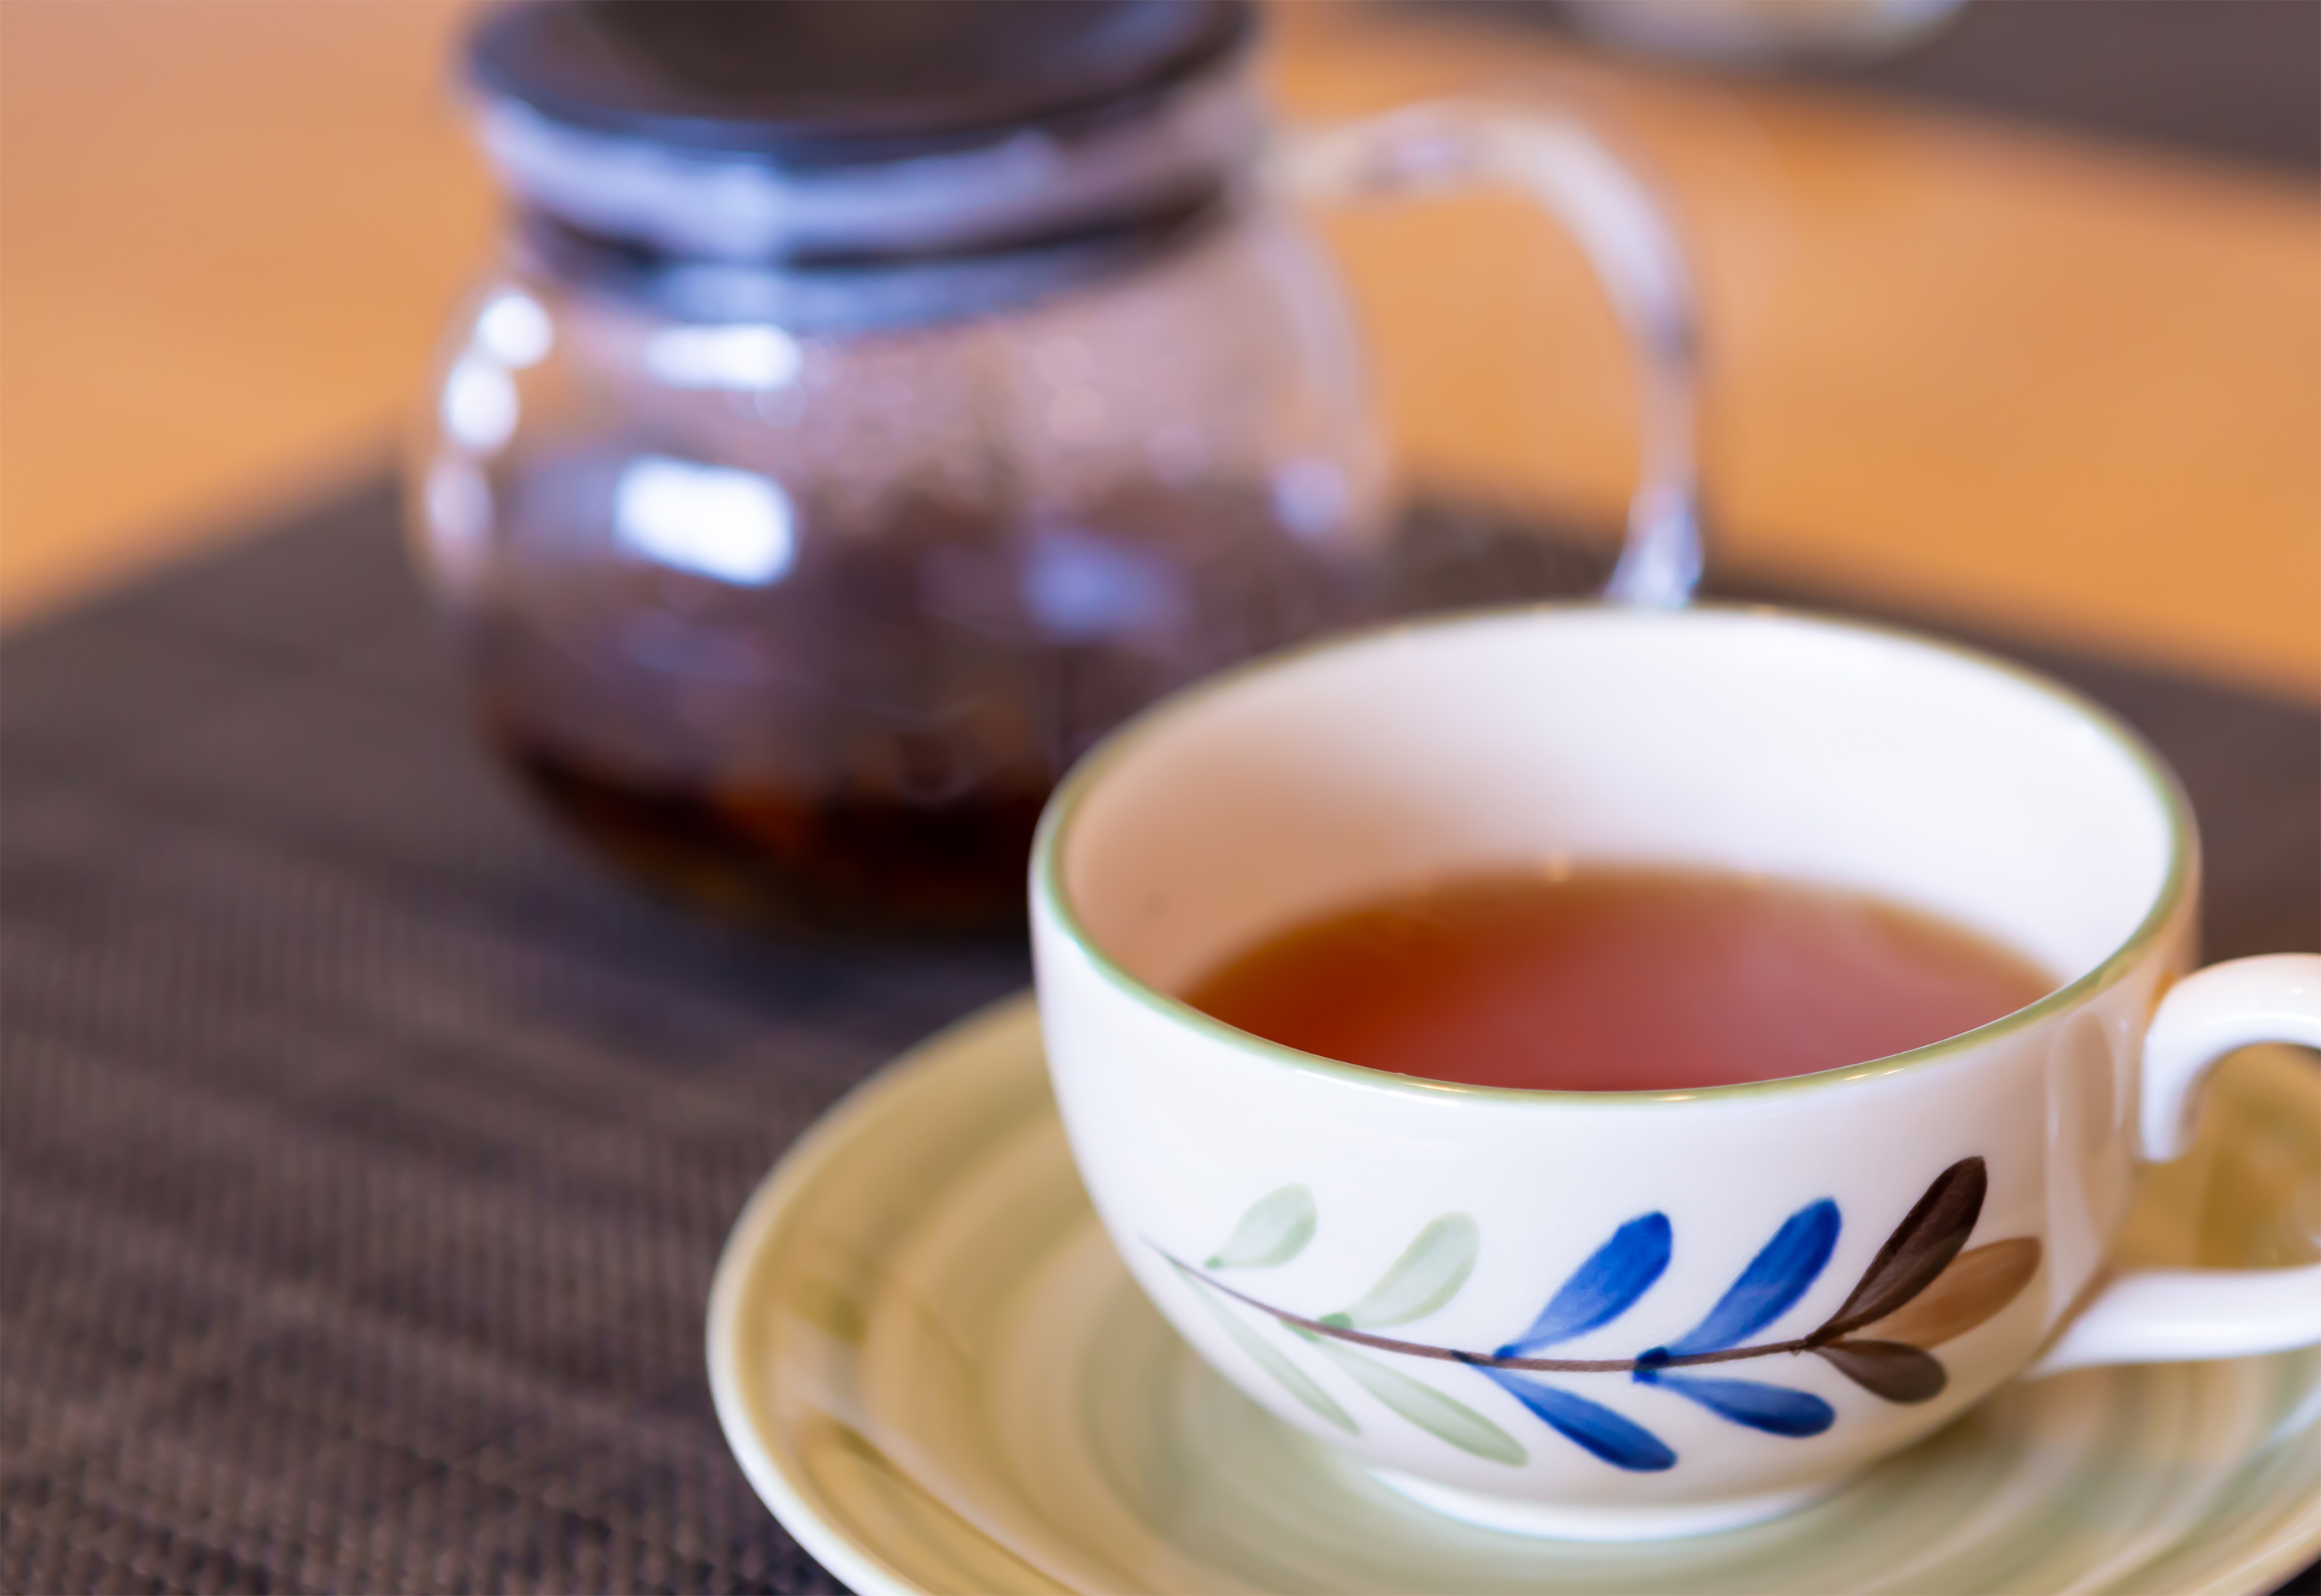 紅茶 カップとソーサー 無料の高画質フリー写真素材 イメージズラボ